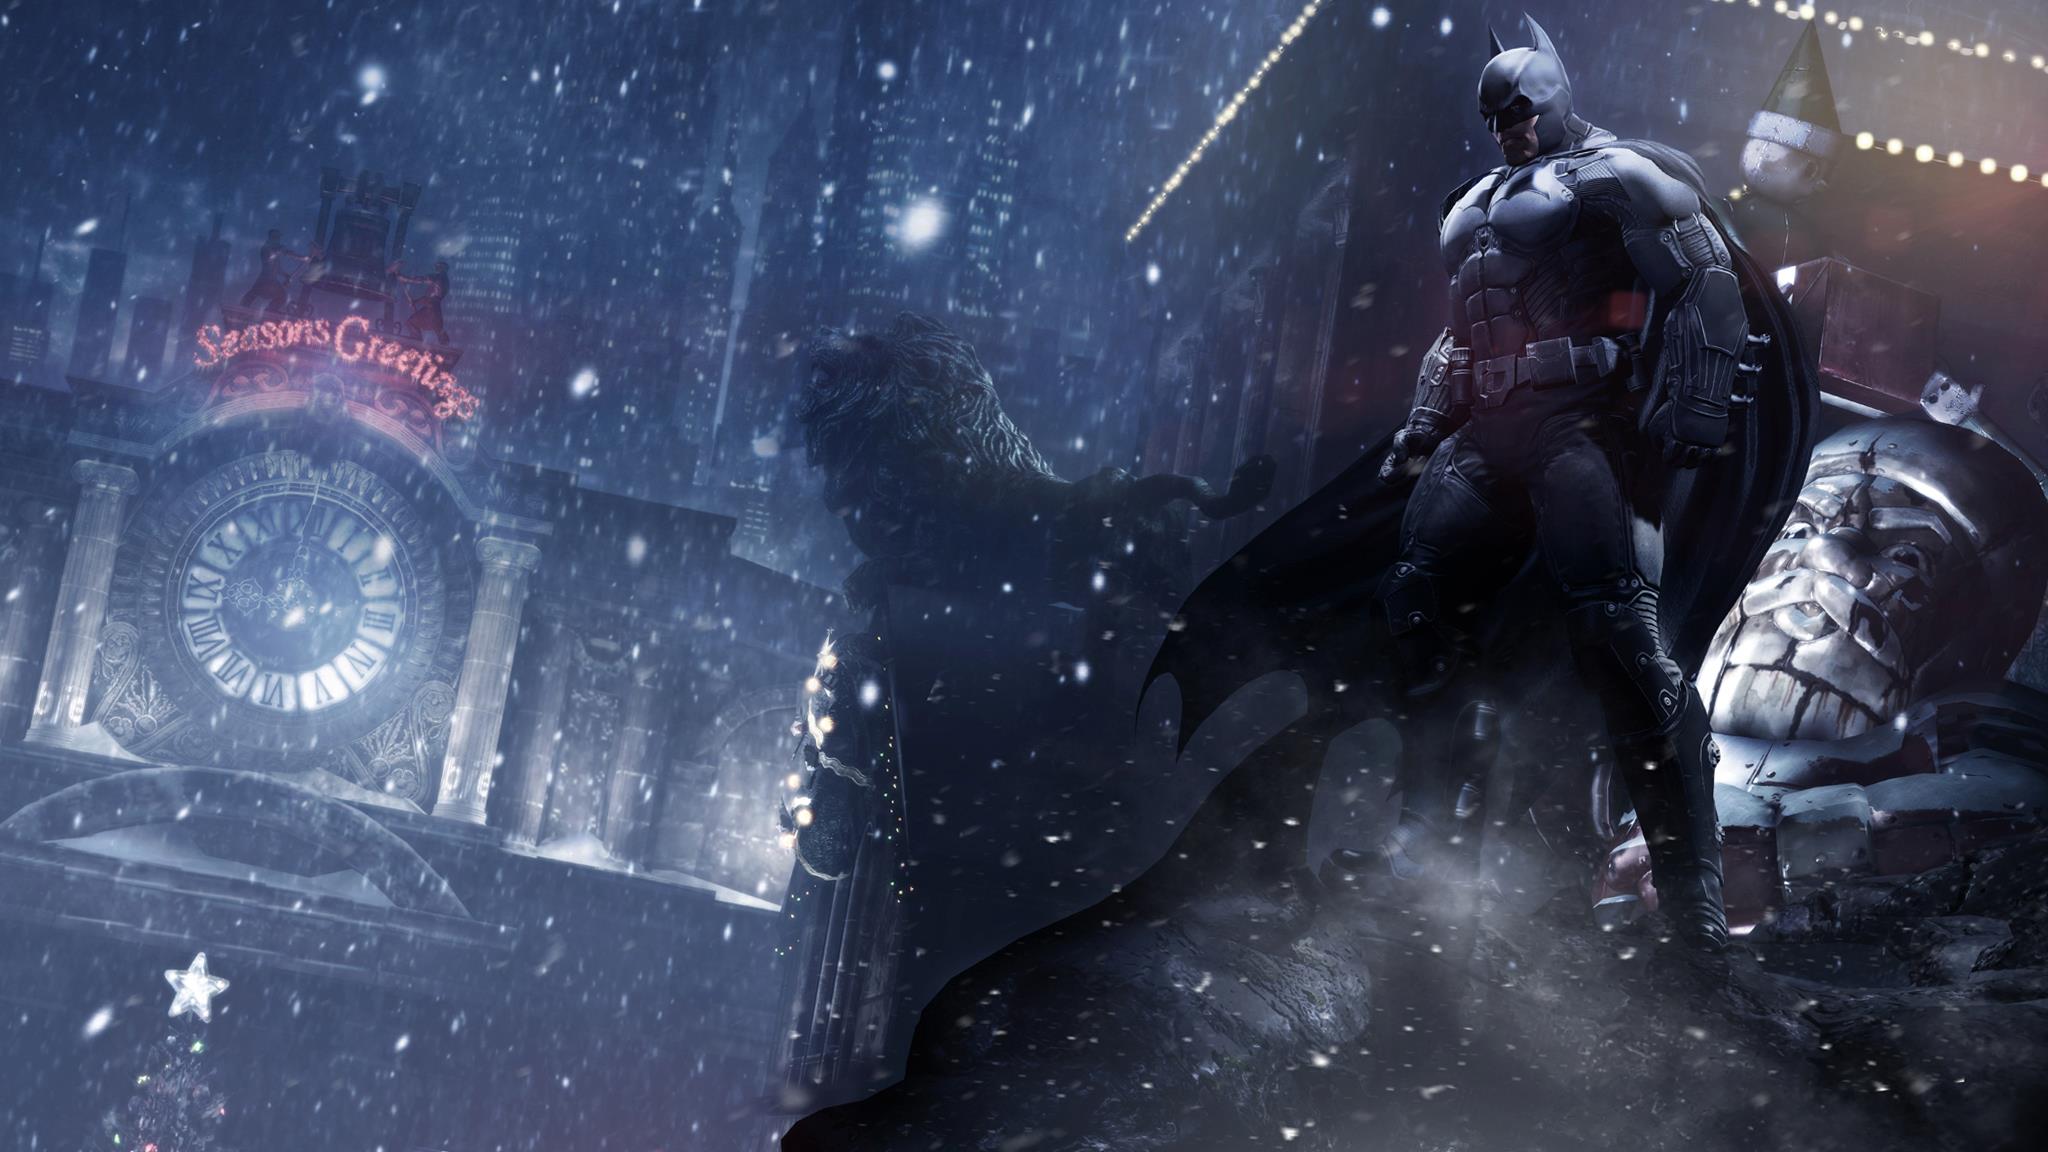 Amazing Batman: Arkham Origins Pictures & Backgrounds